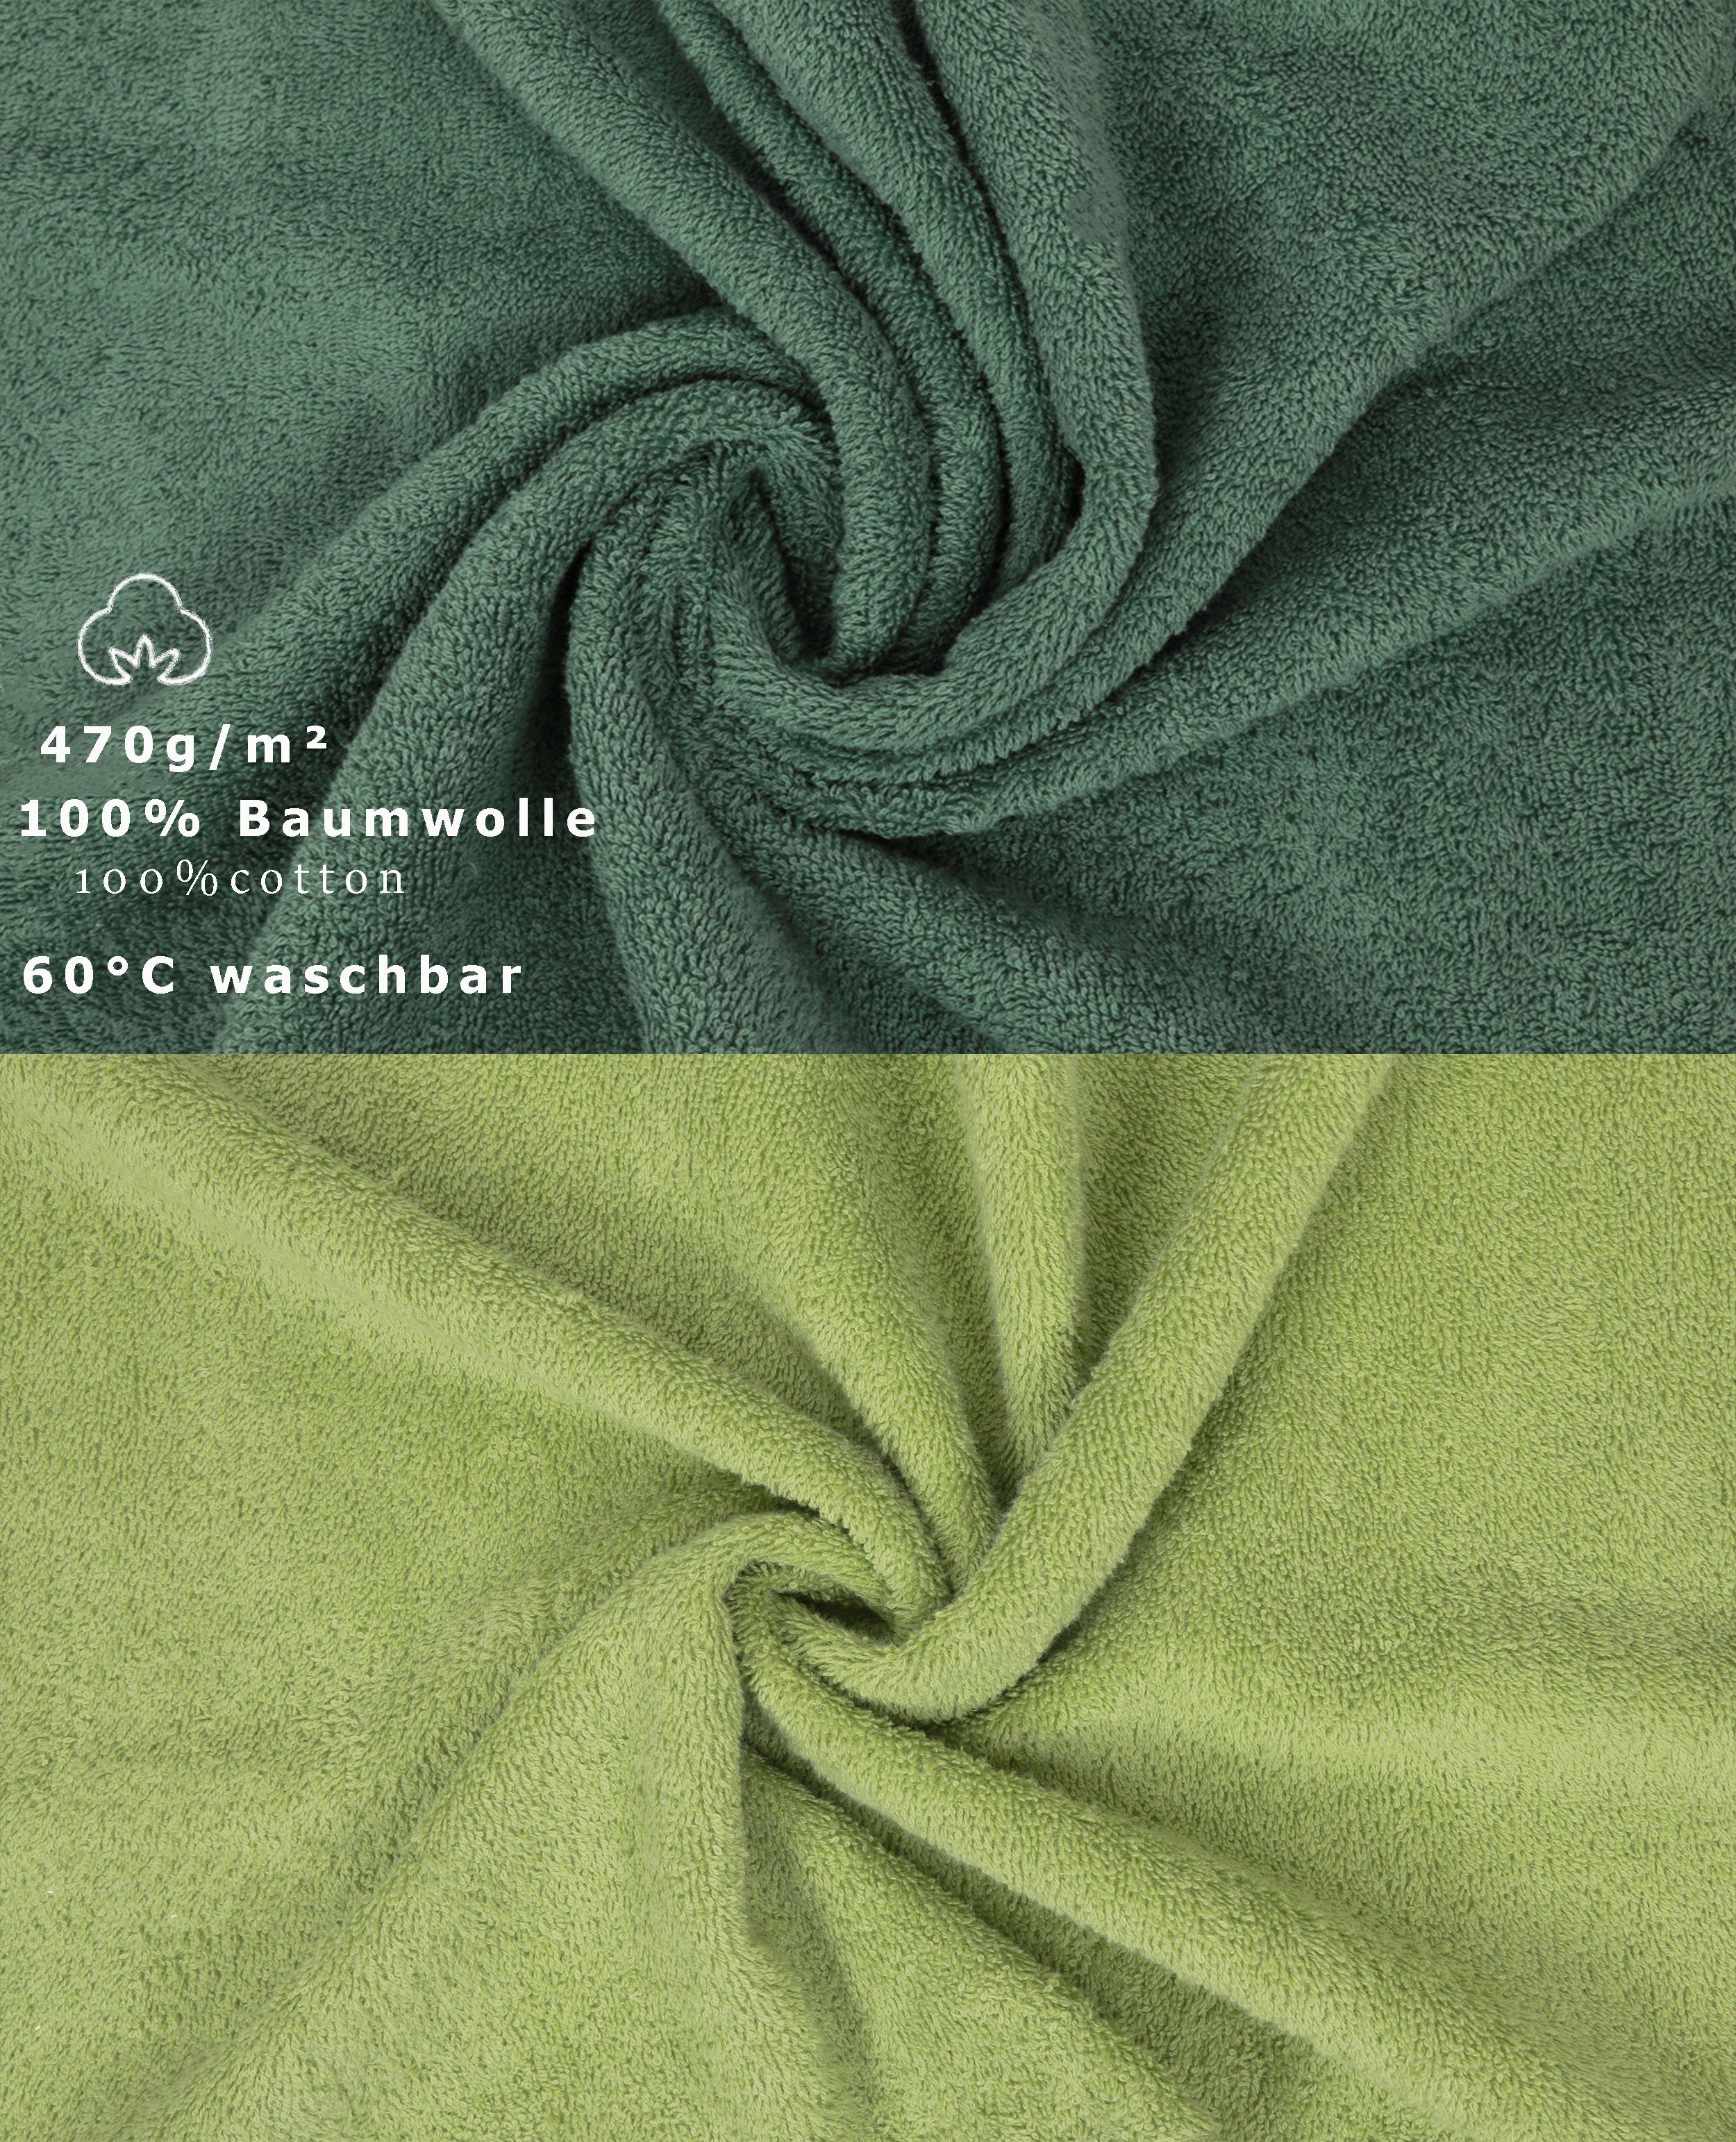 Set 12-TLG. tannengrün/avocadogrün, Betz Handtuch Baumwolle, (12-tlg) 100% Premium Farbe Set Handtuch